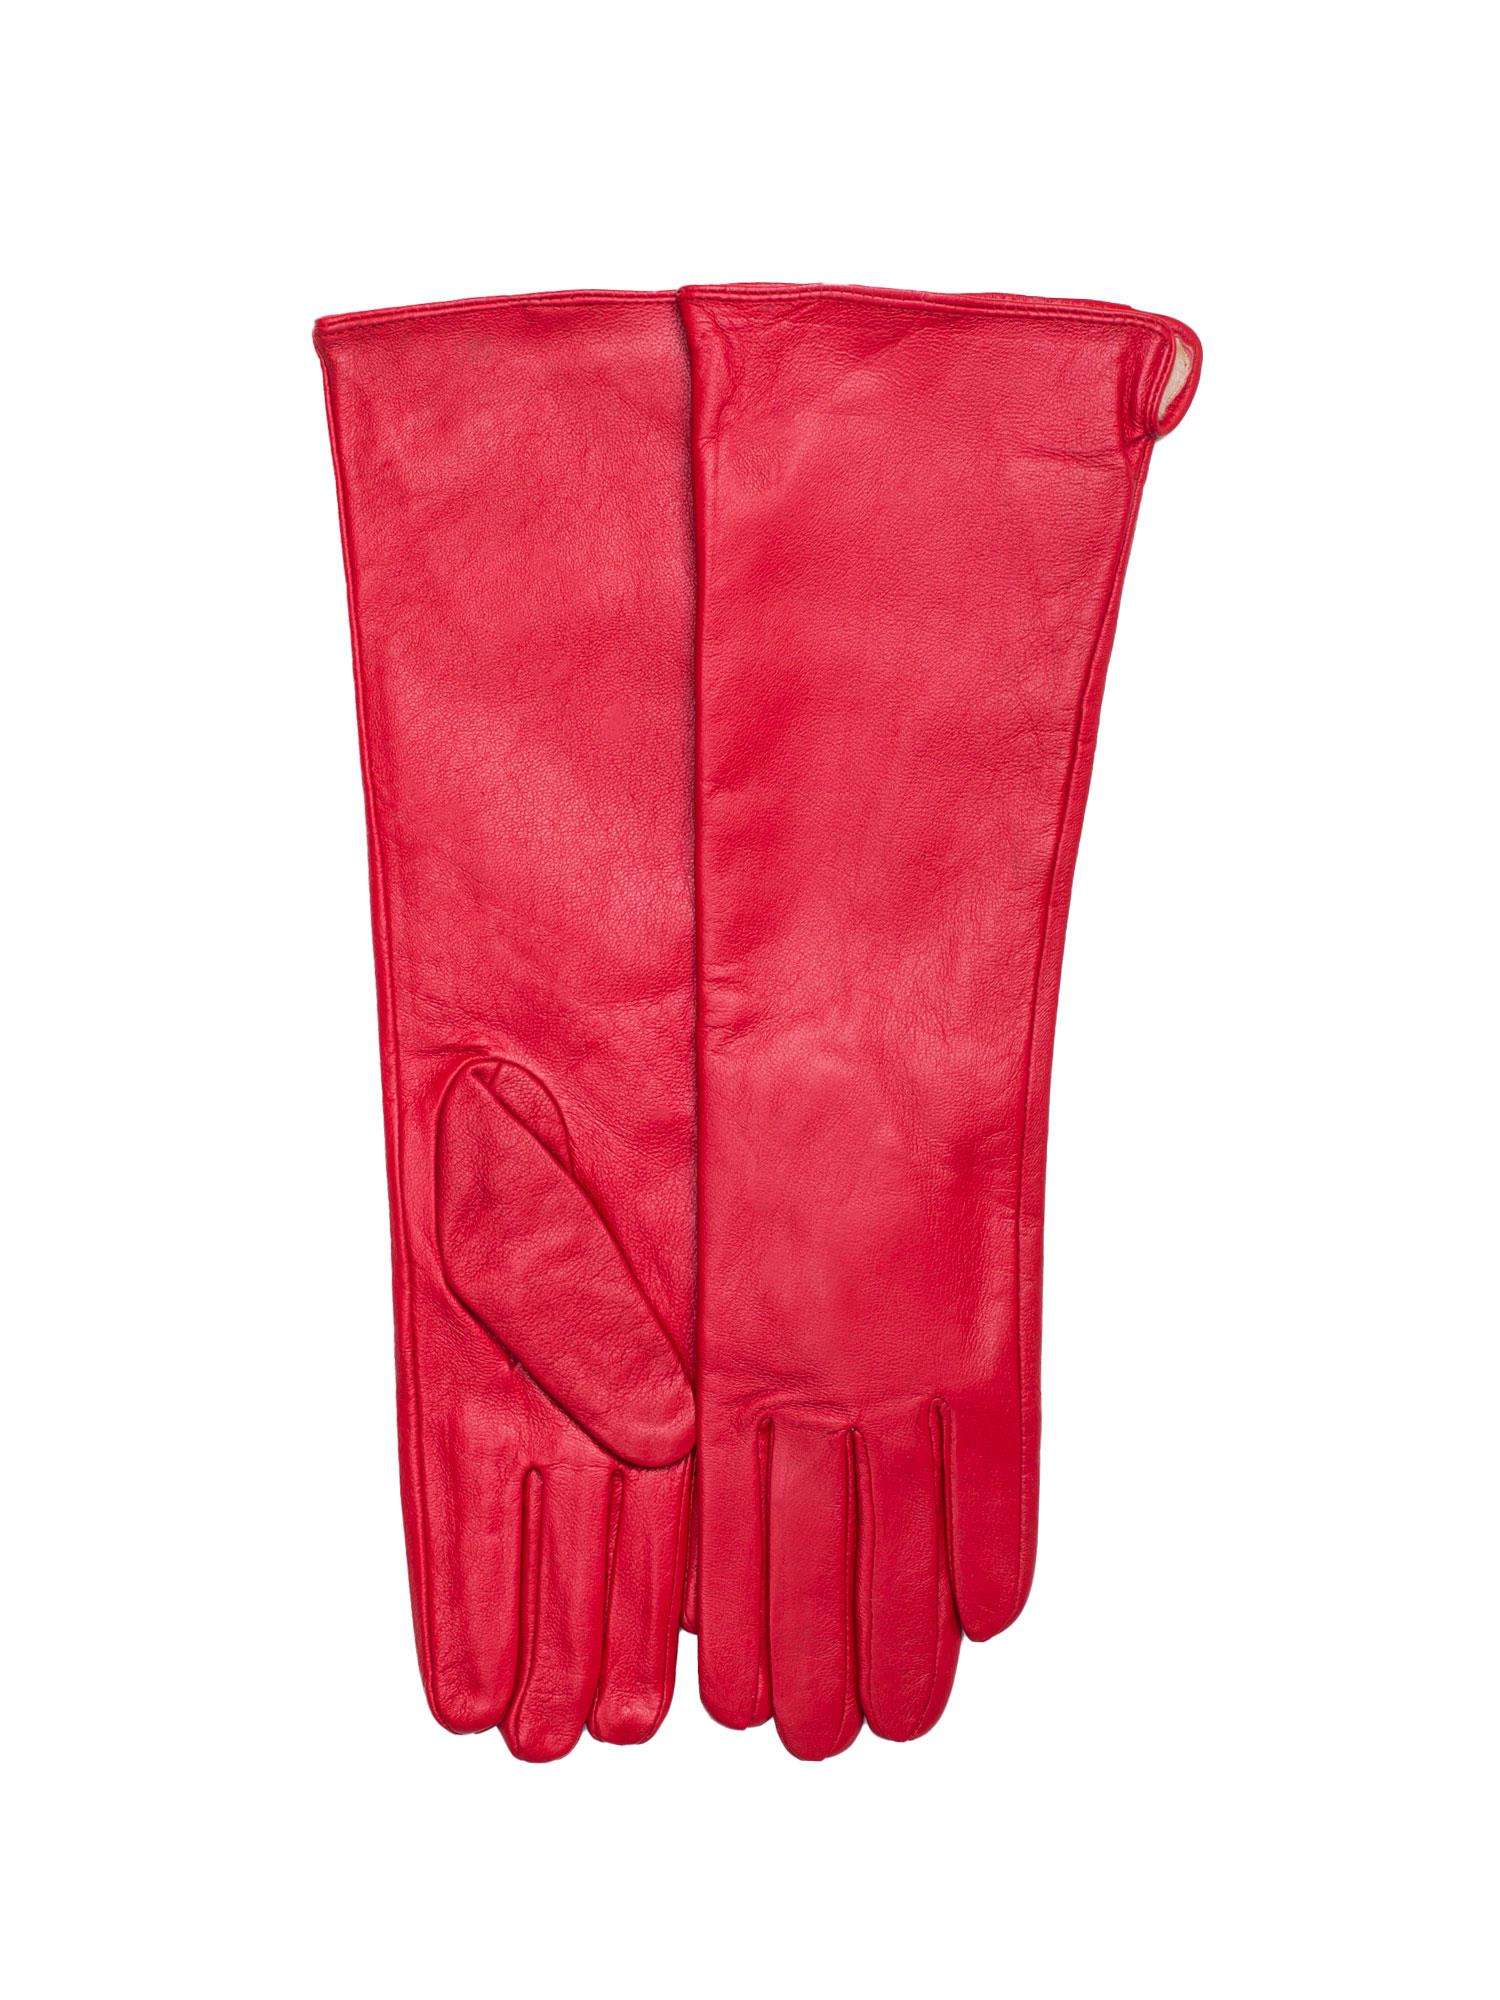 Dámske červené rukavice - M